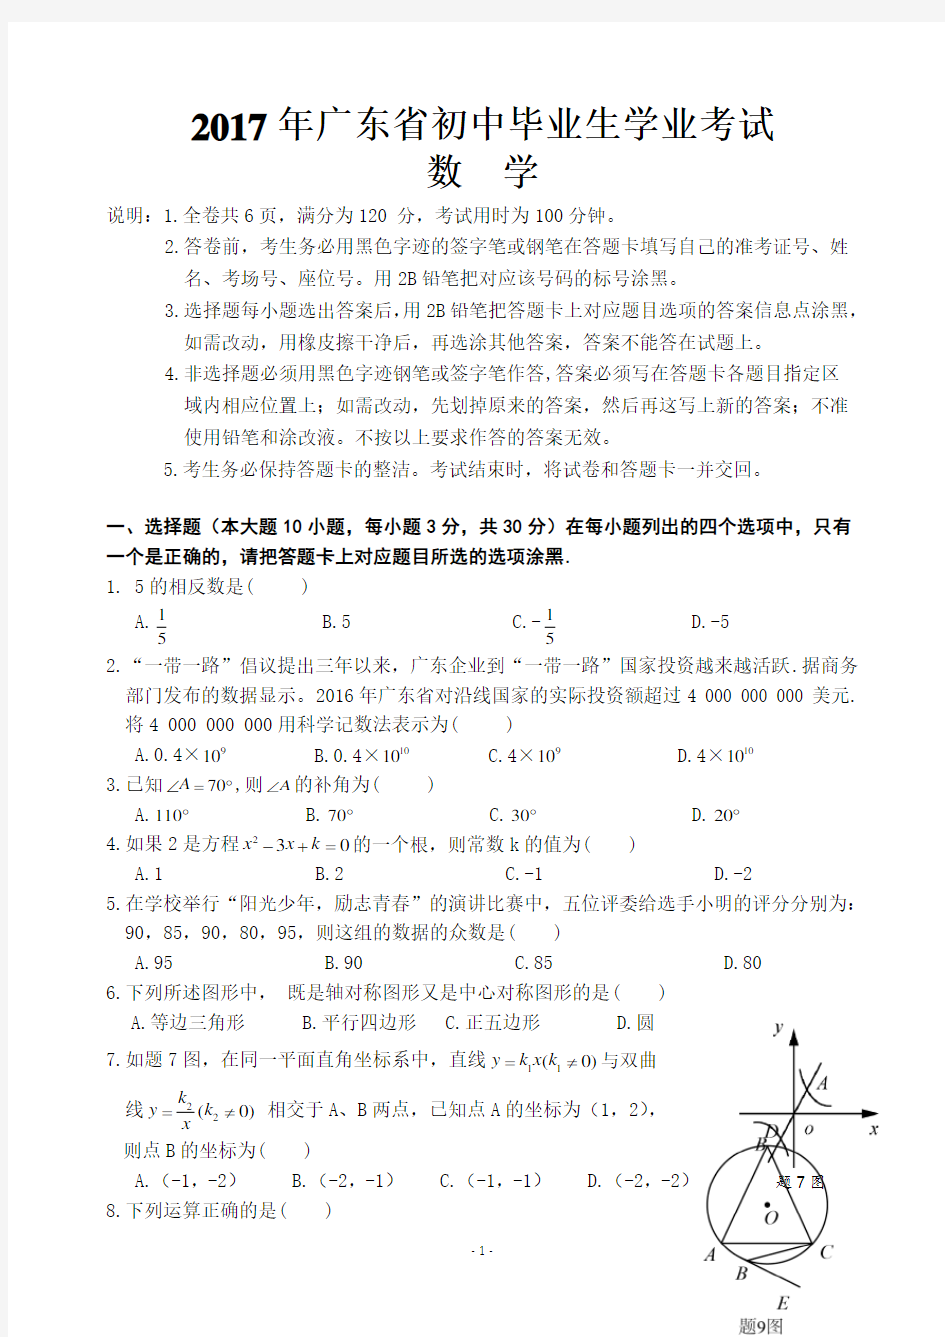 (完整word)2017年广东省初中毕业生学业考试数学科试卷和答案